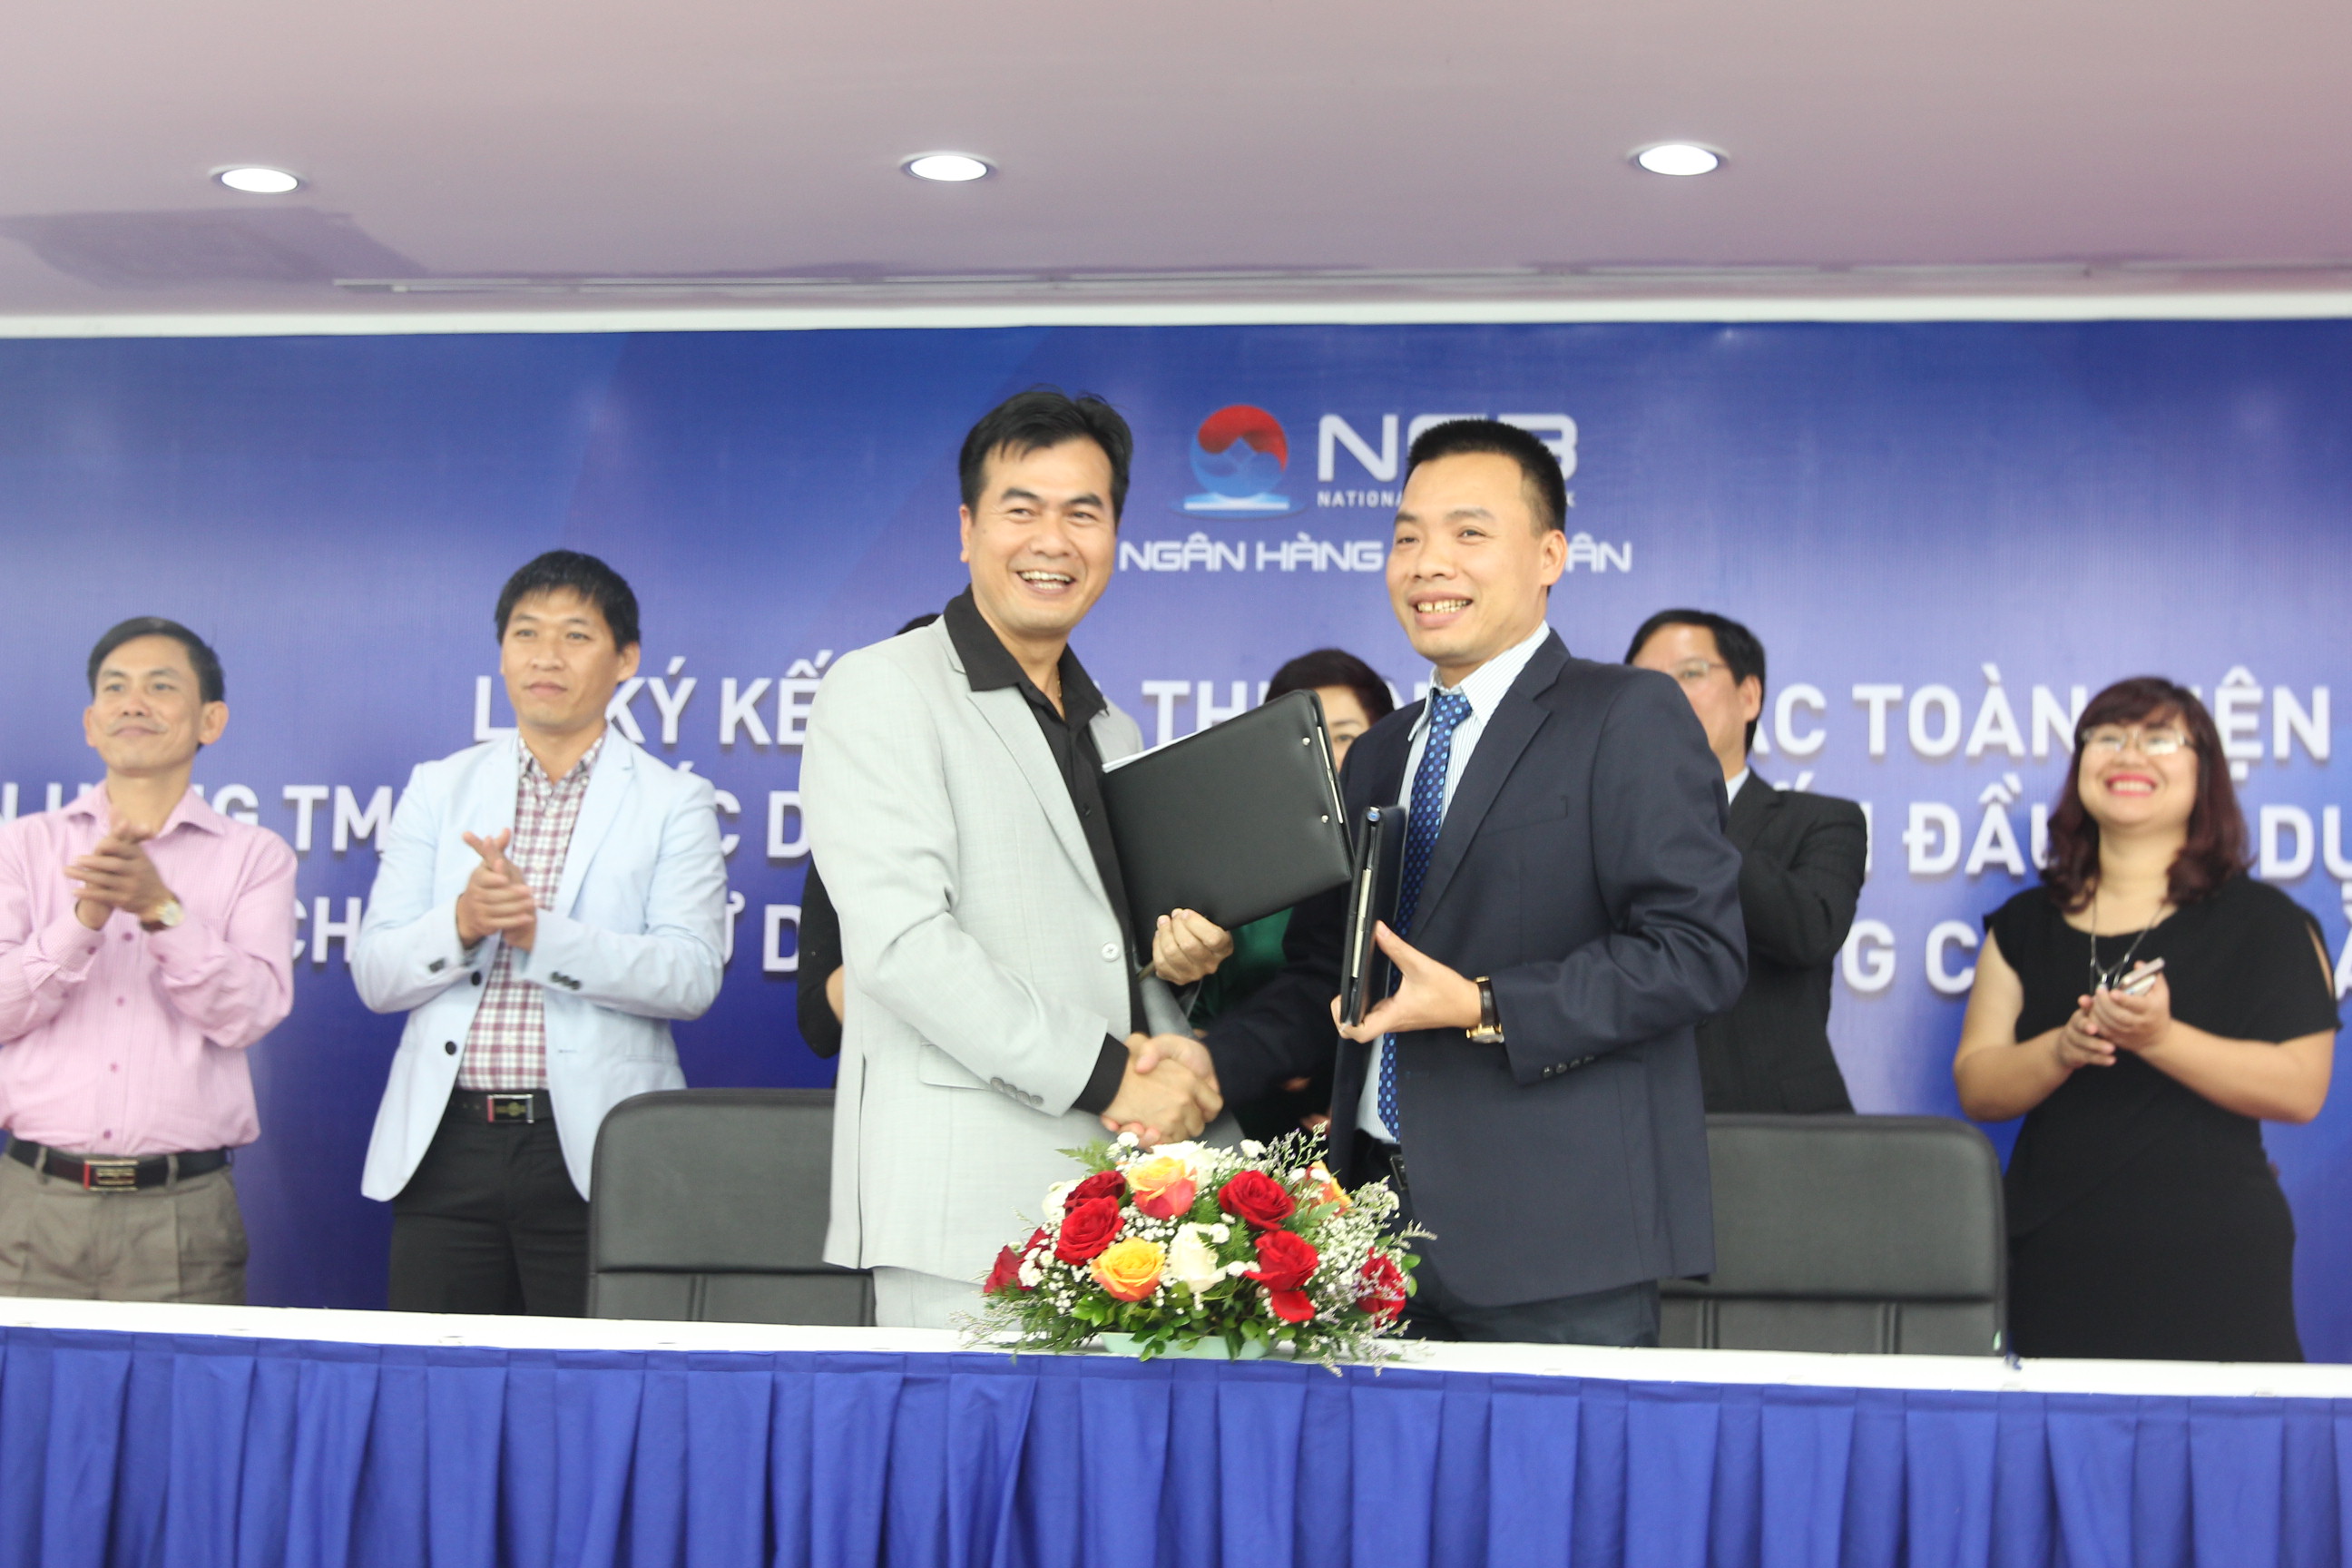 NCB tài trợ độc quyền dự án 317 Trường Chinh và ưu đãi lãi suất cho khách hàng vay mua nhà